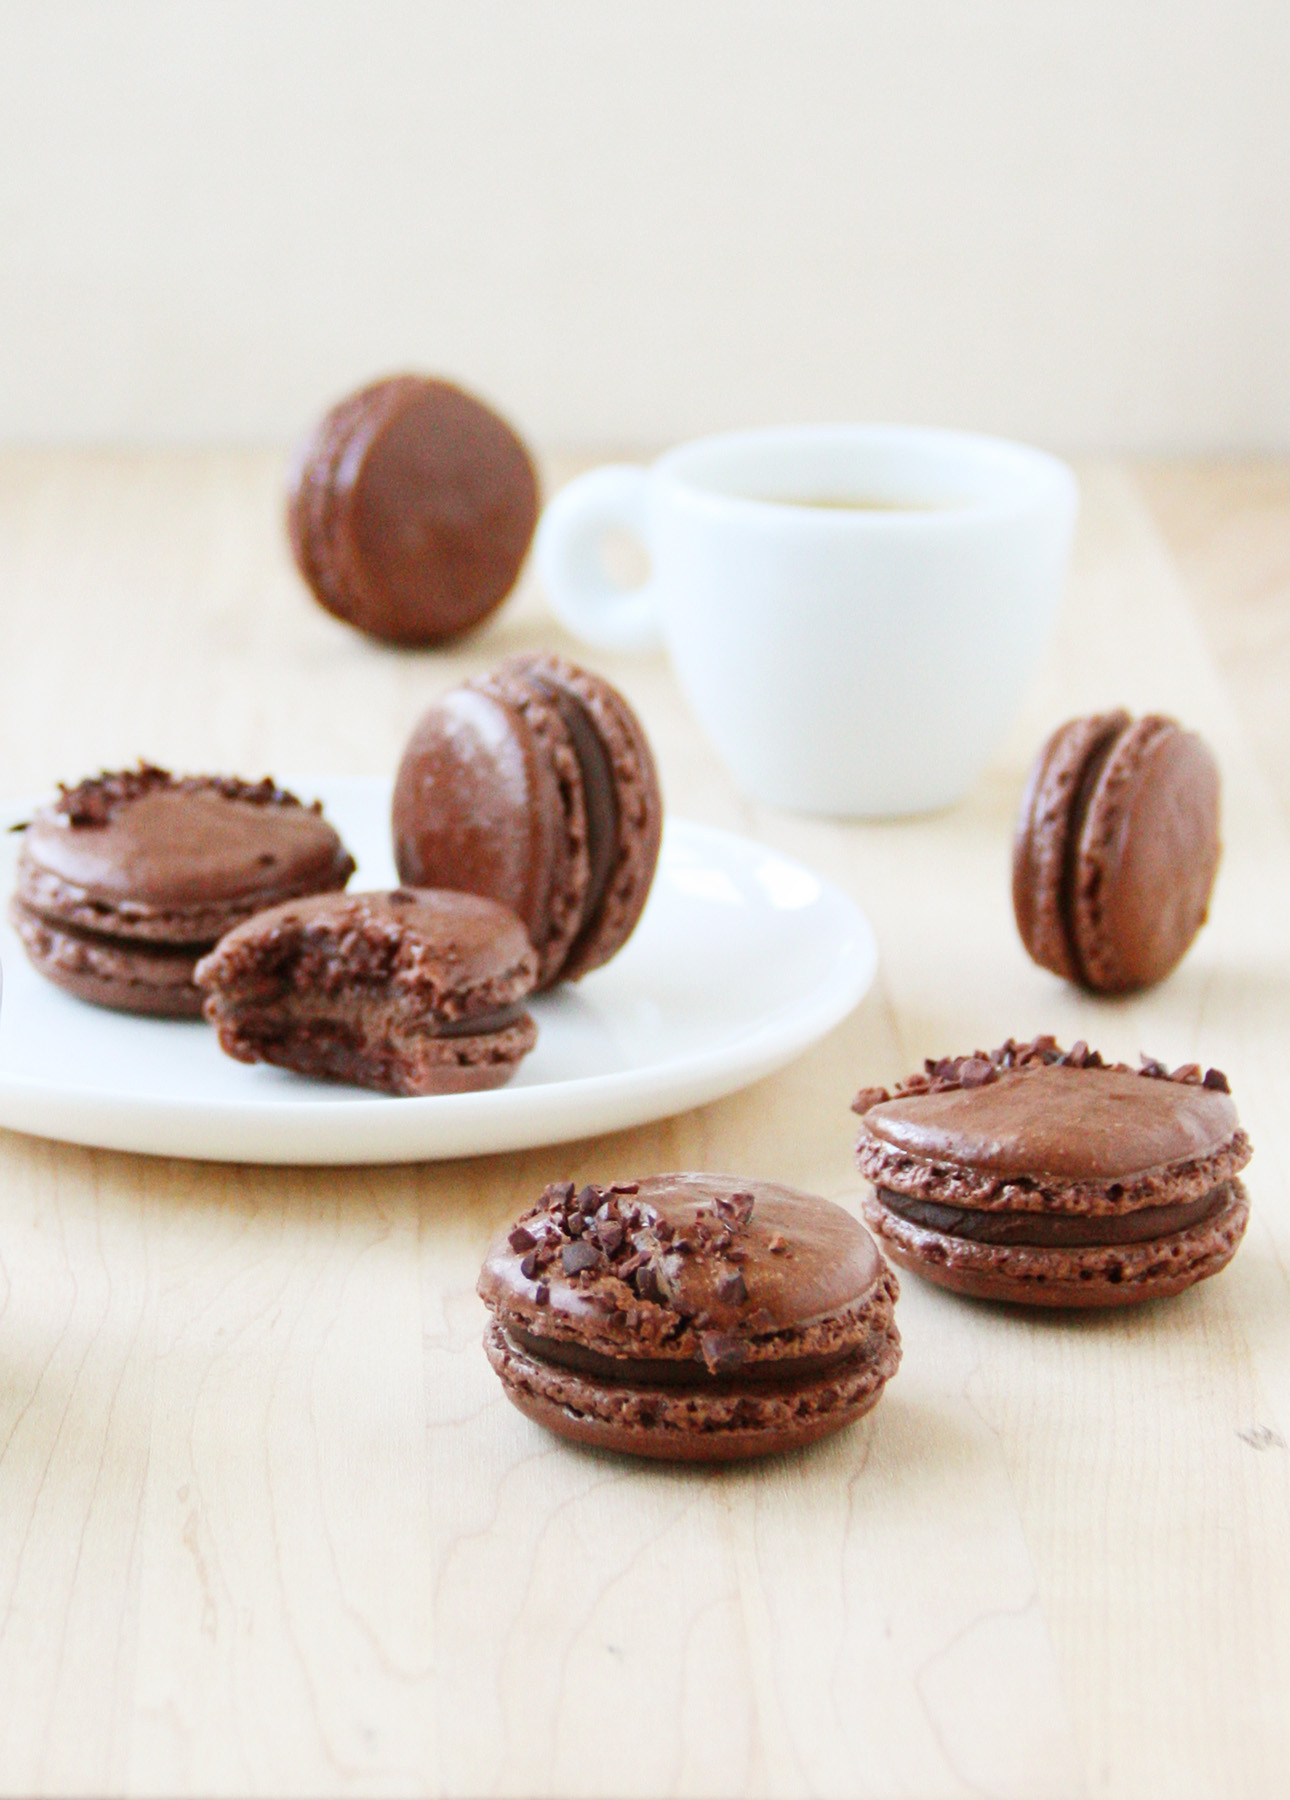 Dark Chocolate French Macarons // FoodNouveau.com